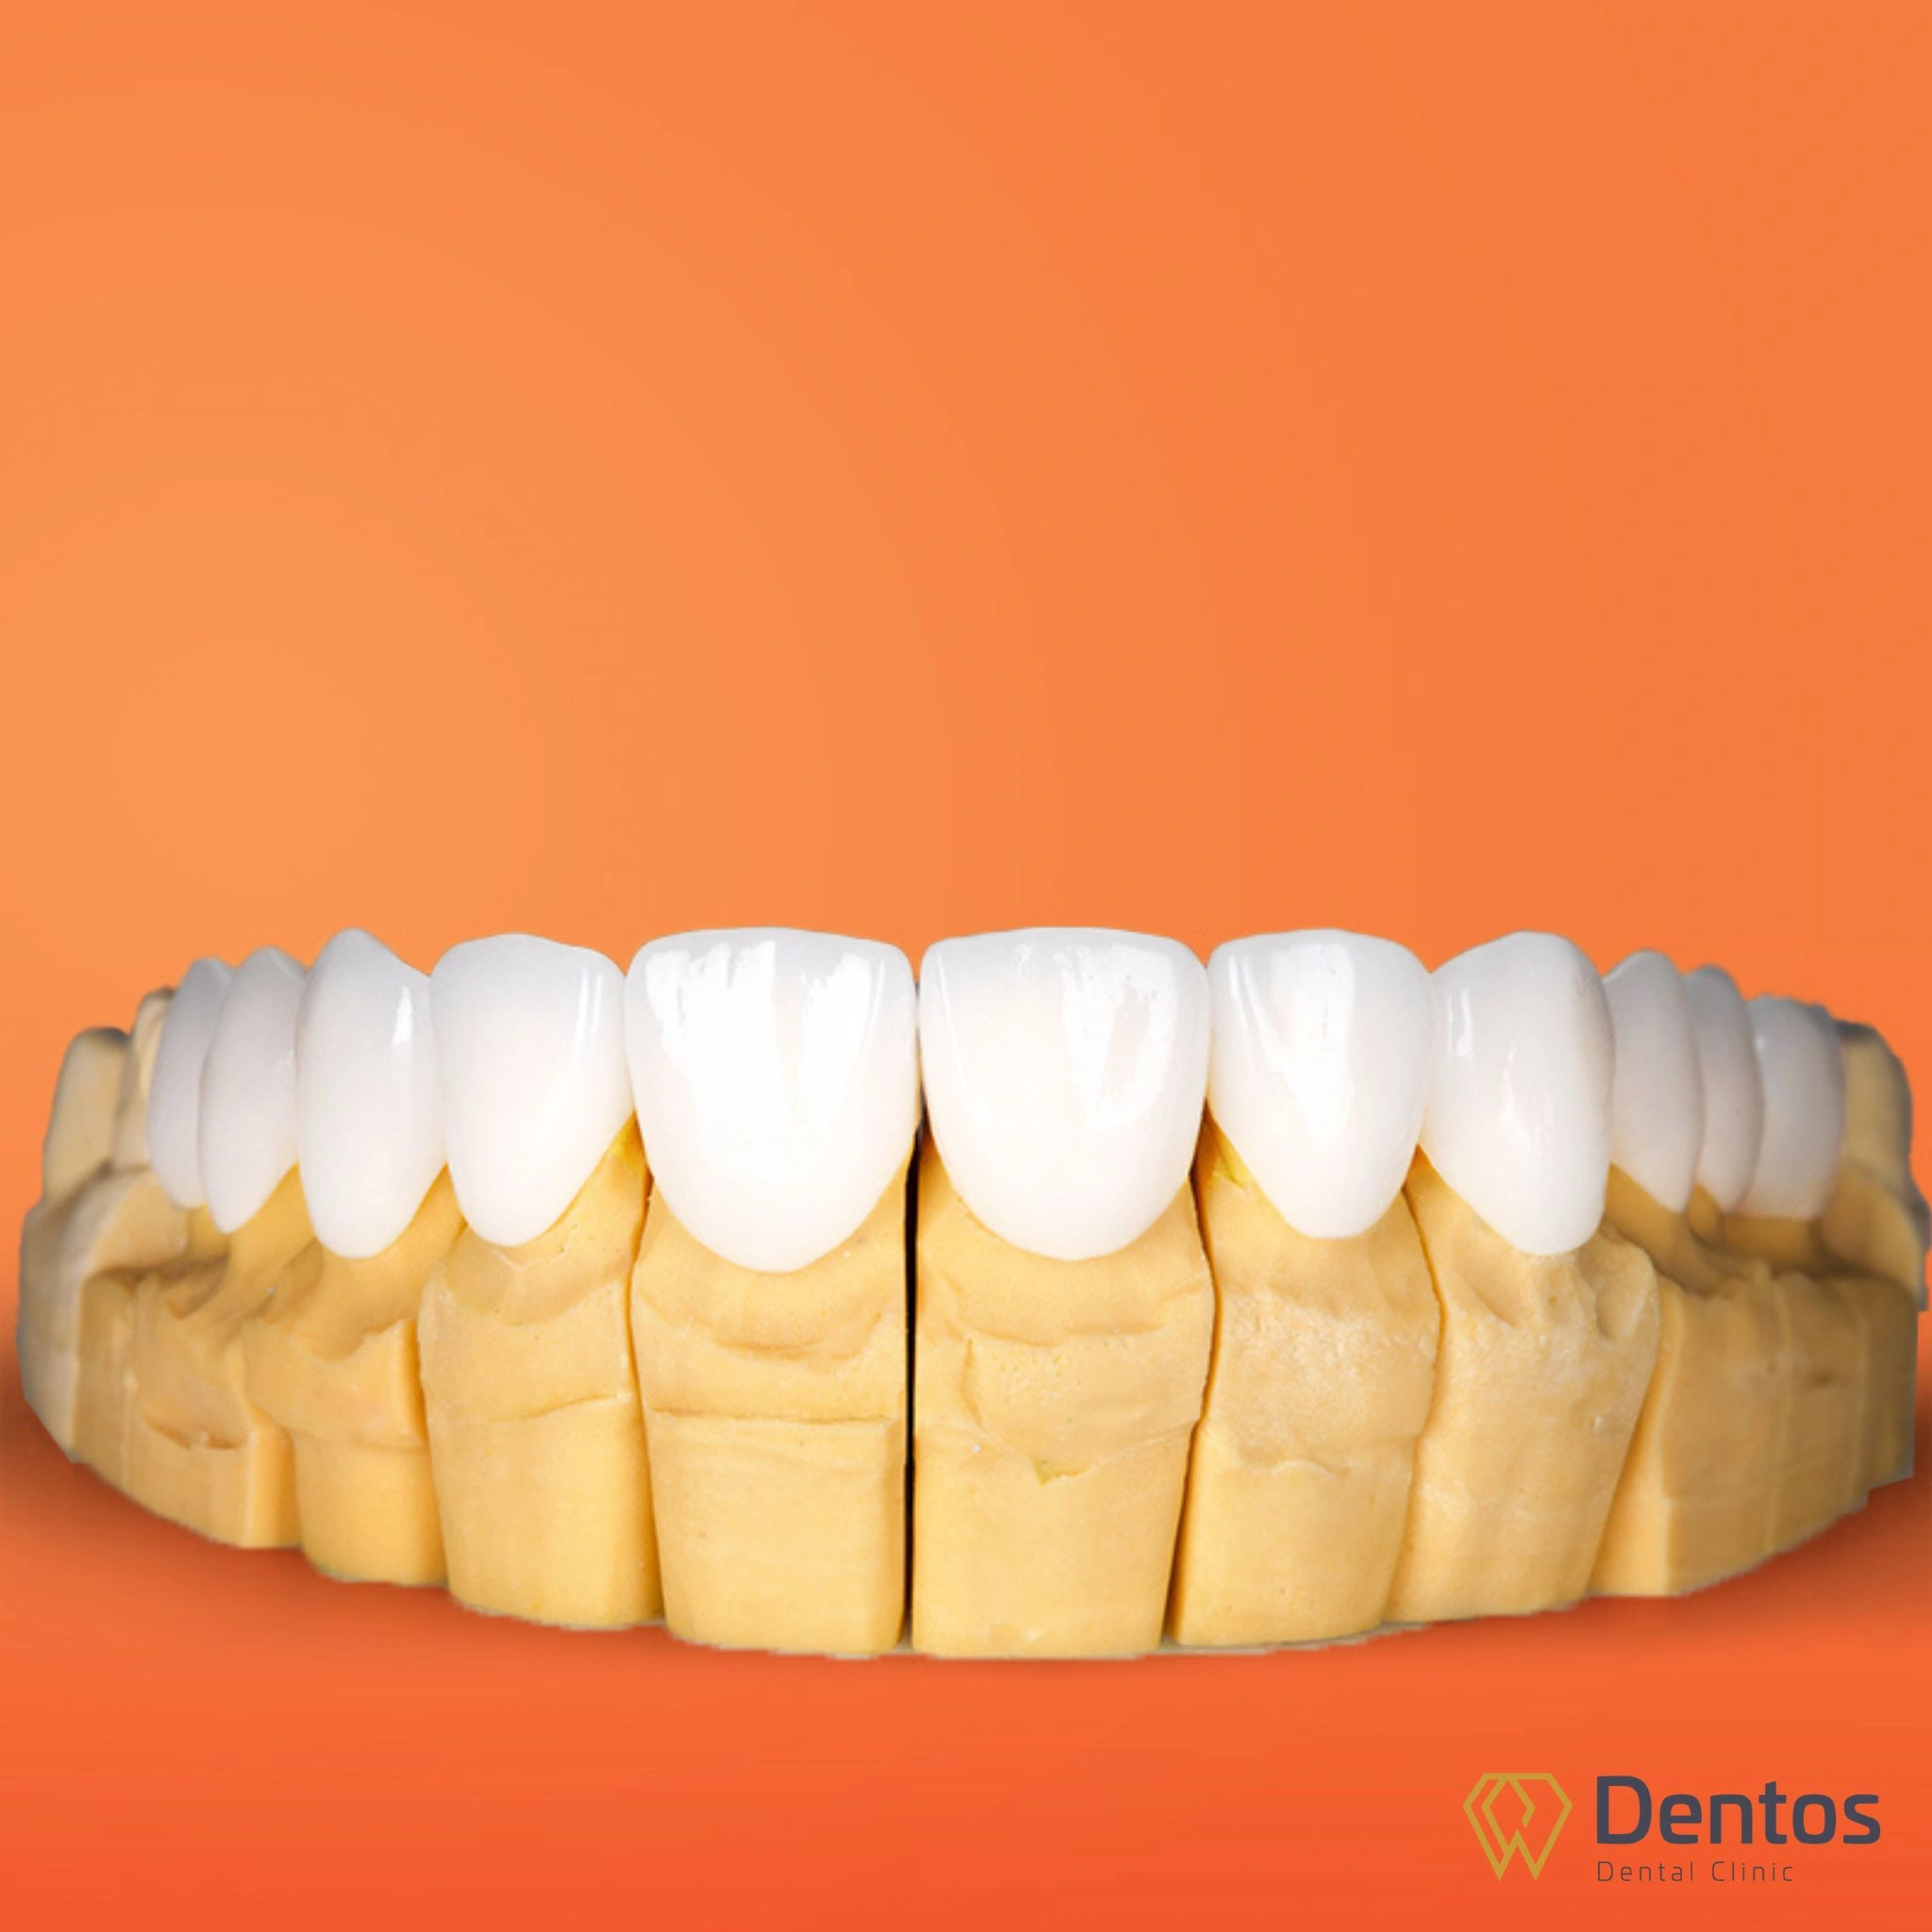 Răng sứ Zirconia chất lượng có màu sắc trắng sáng tự nhiên